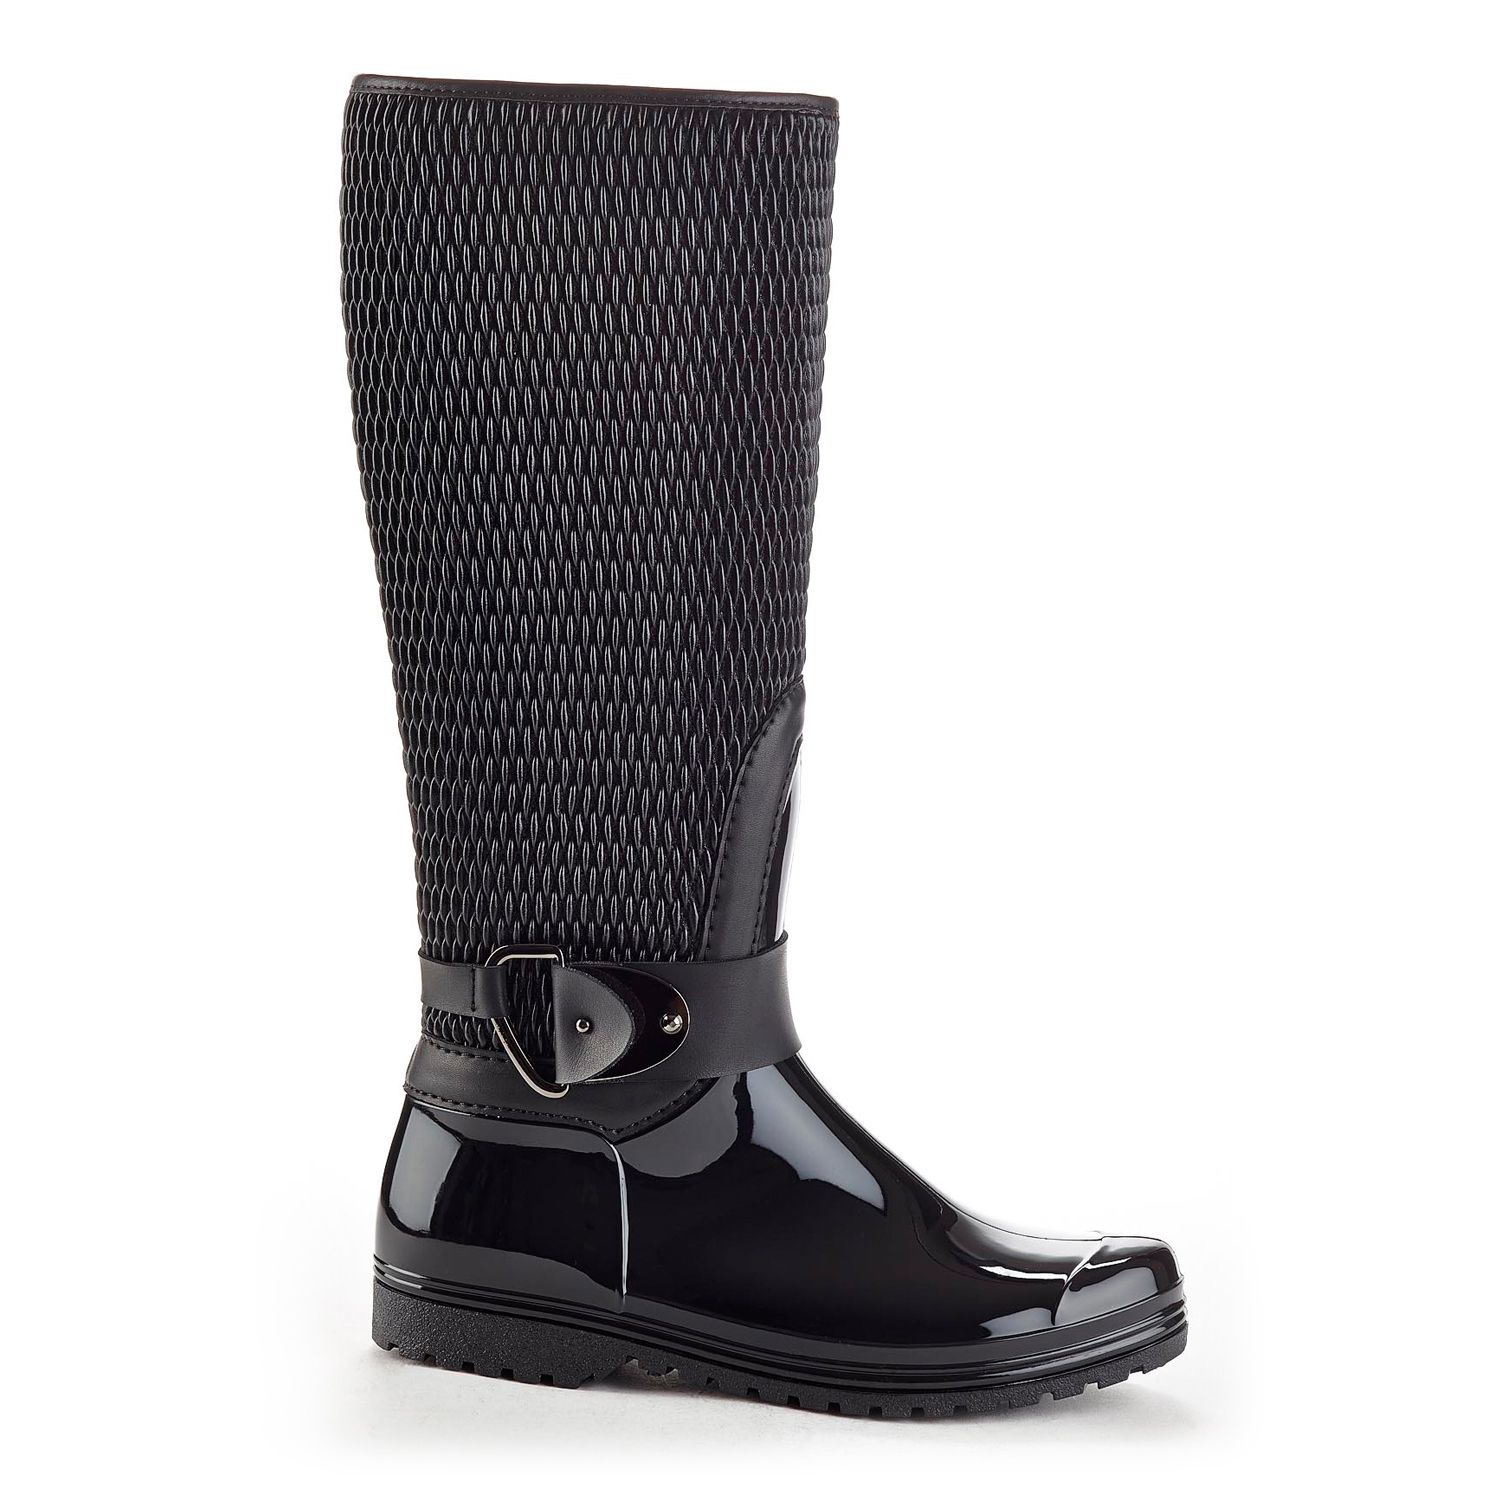 women's rain boots with zipper